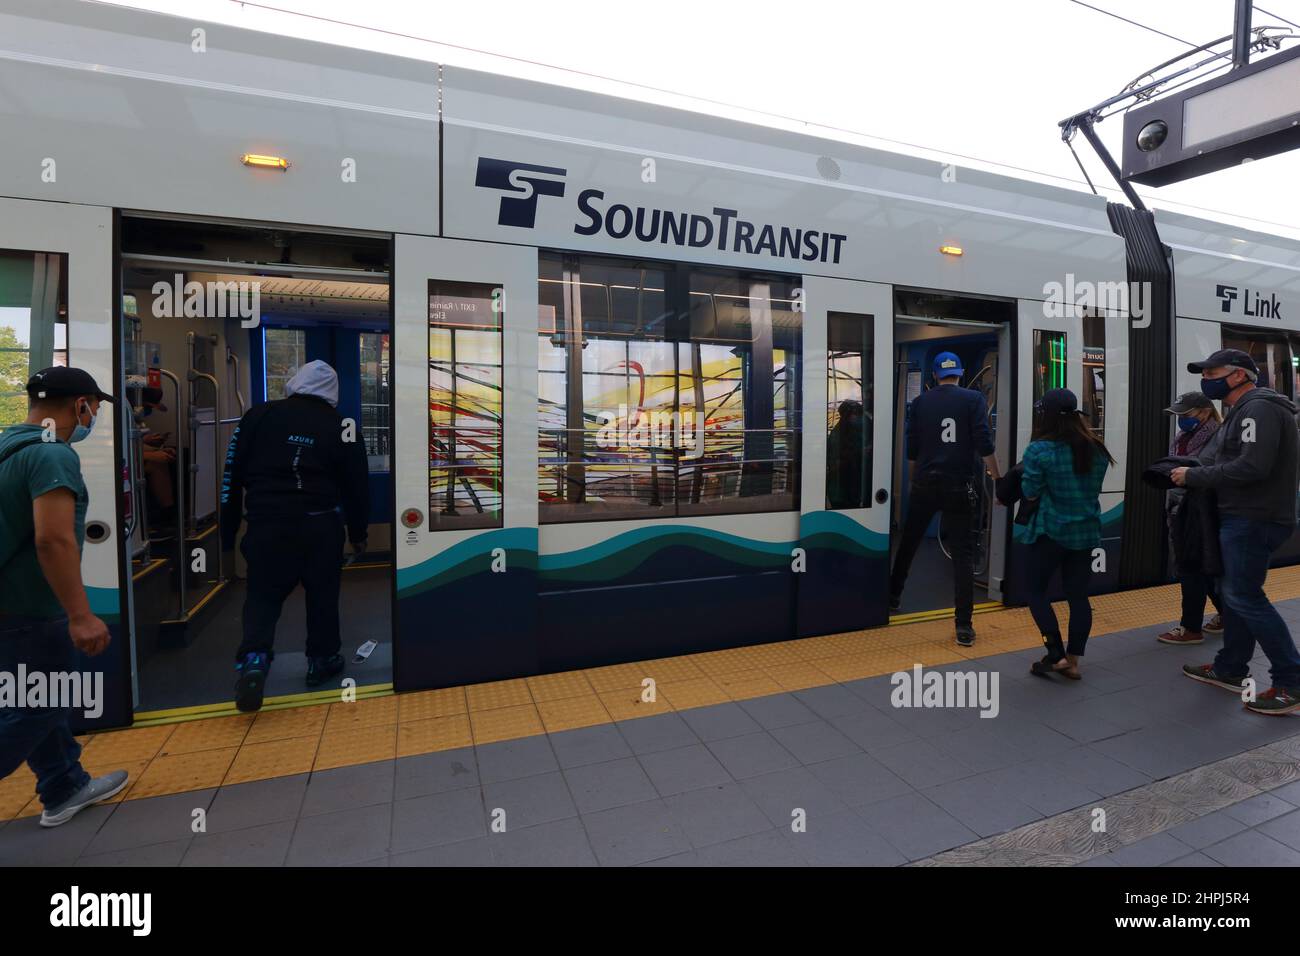 Personnes à bord d'un train léger Link 1 lignes Sound Transit à Seattle, Washington. Banque D'Images